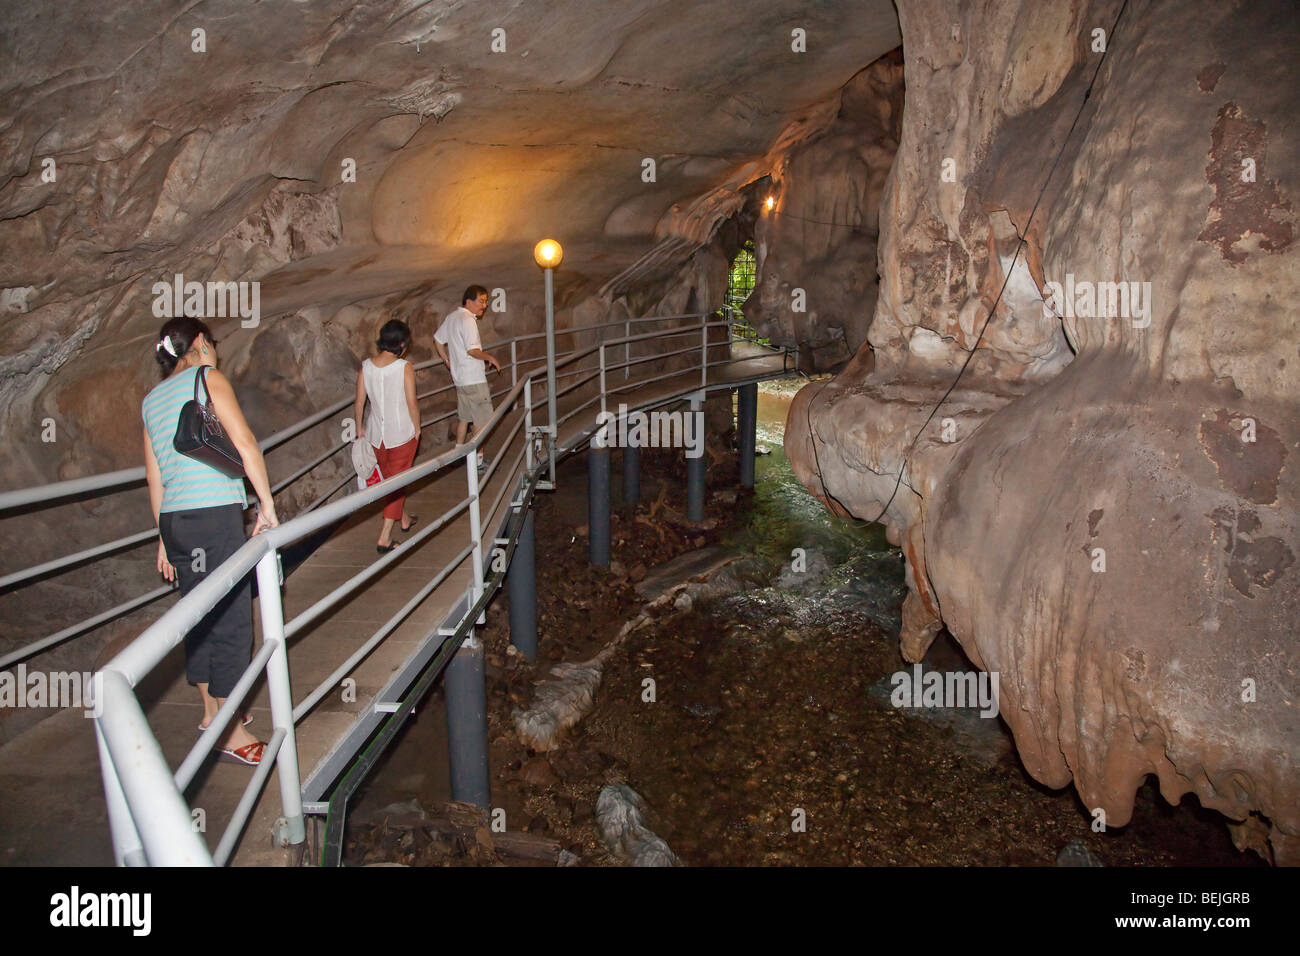 Gua Tempurung cave interior showing touristes admirant le sol en stream sous la passerelle Banque D'Images